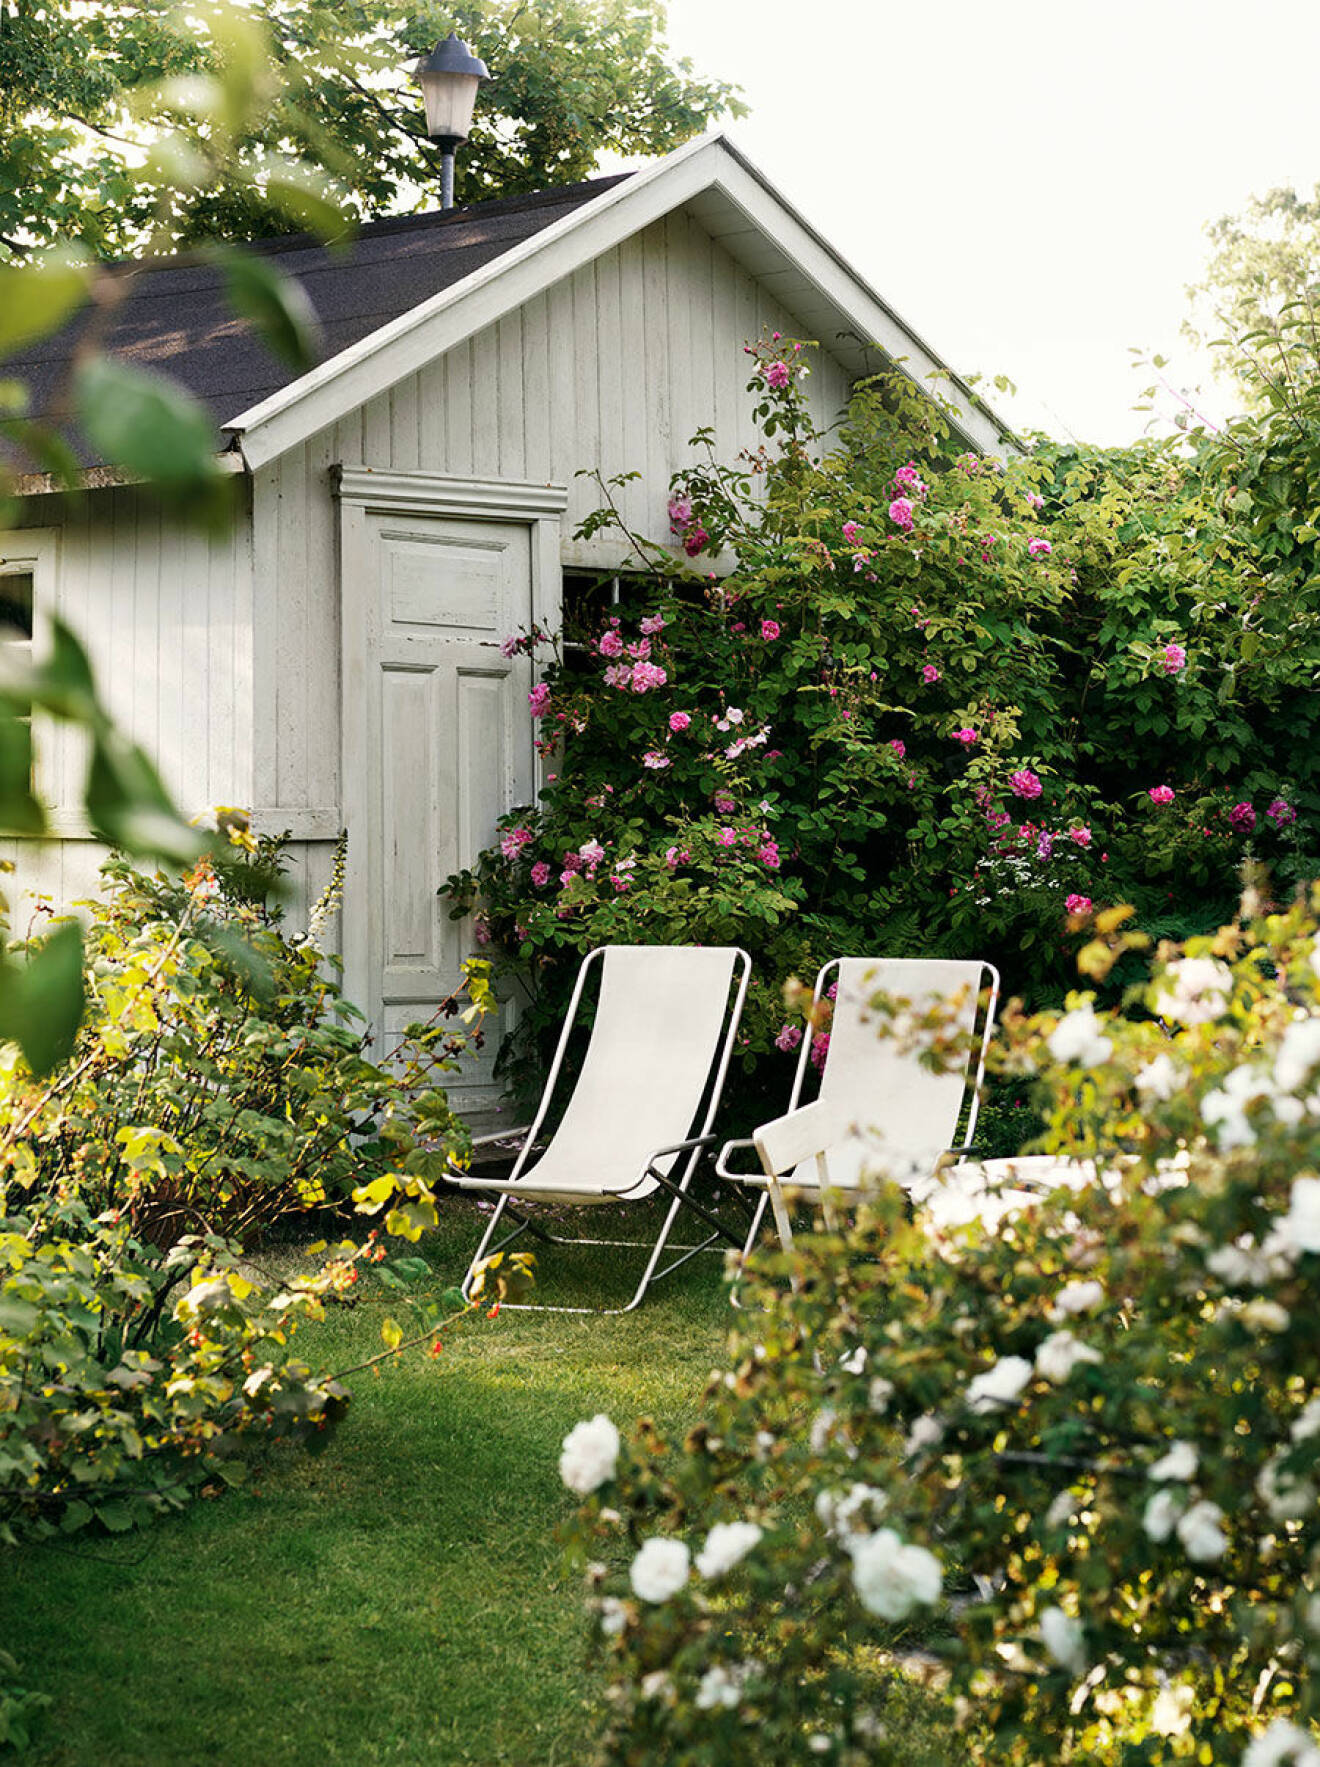 Rosengarden_garden_tradgard_rosor_roses_utemobler_outdoor_furniture_Foto_Petra_Bindel